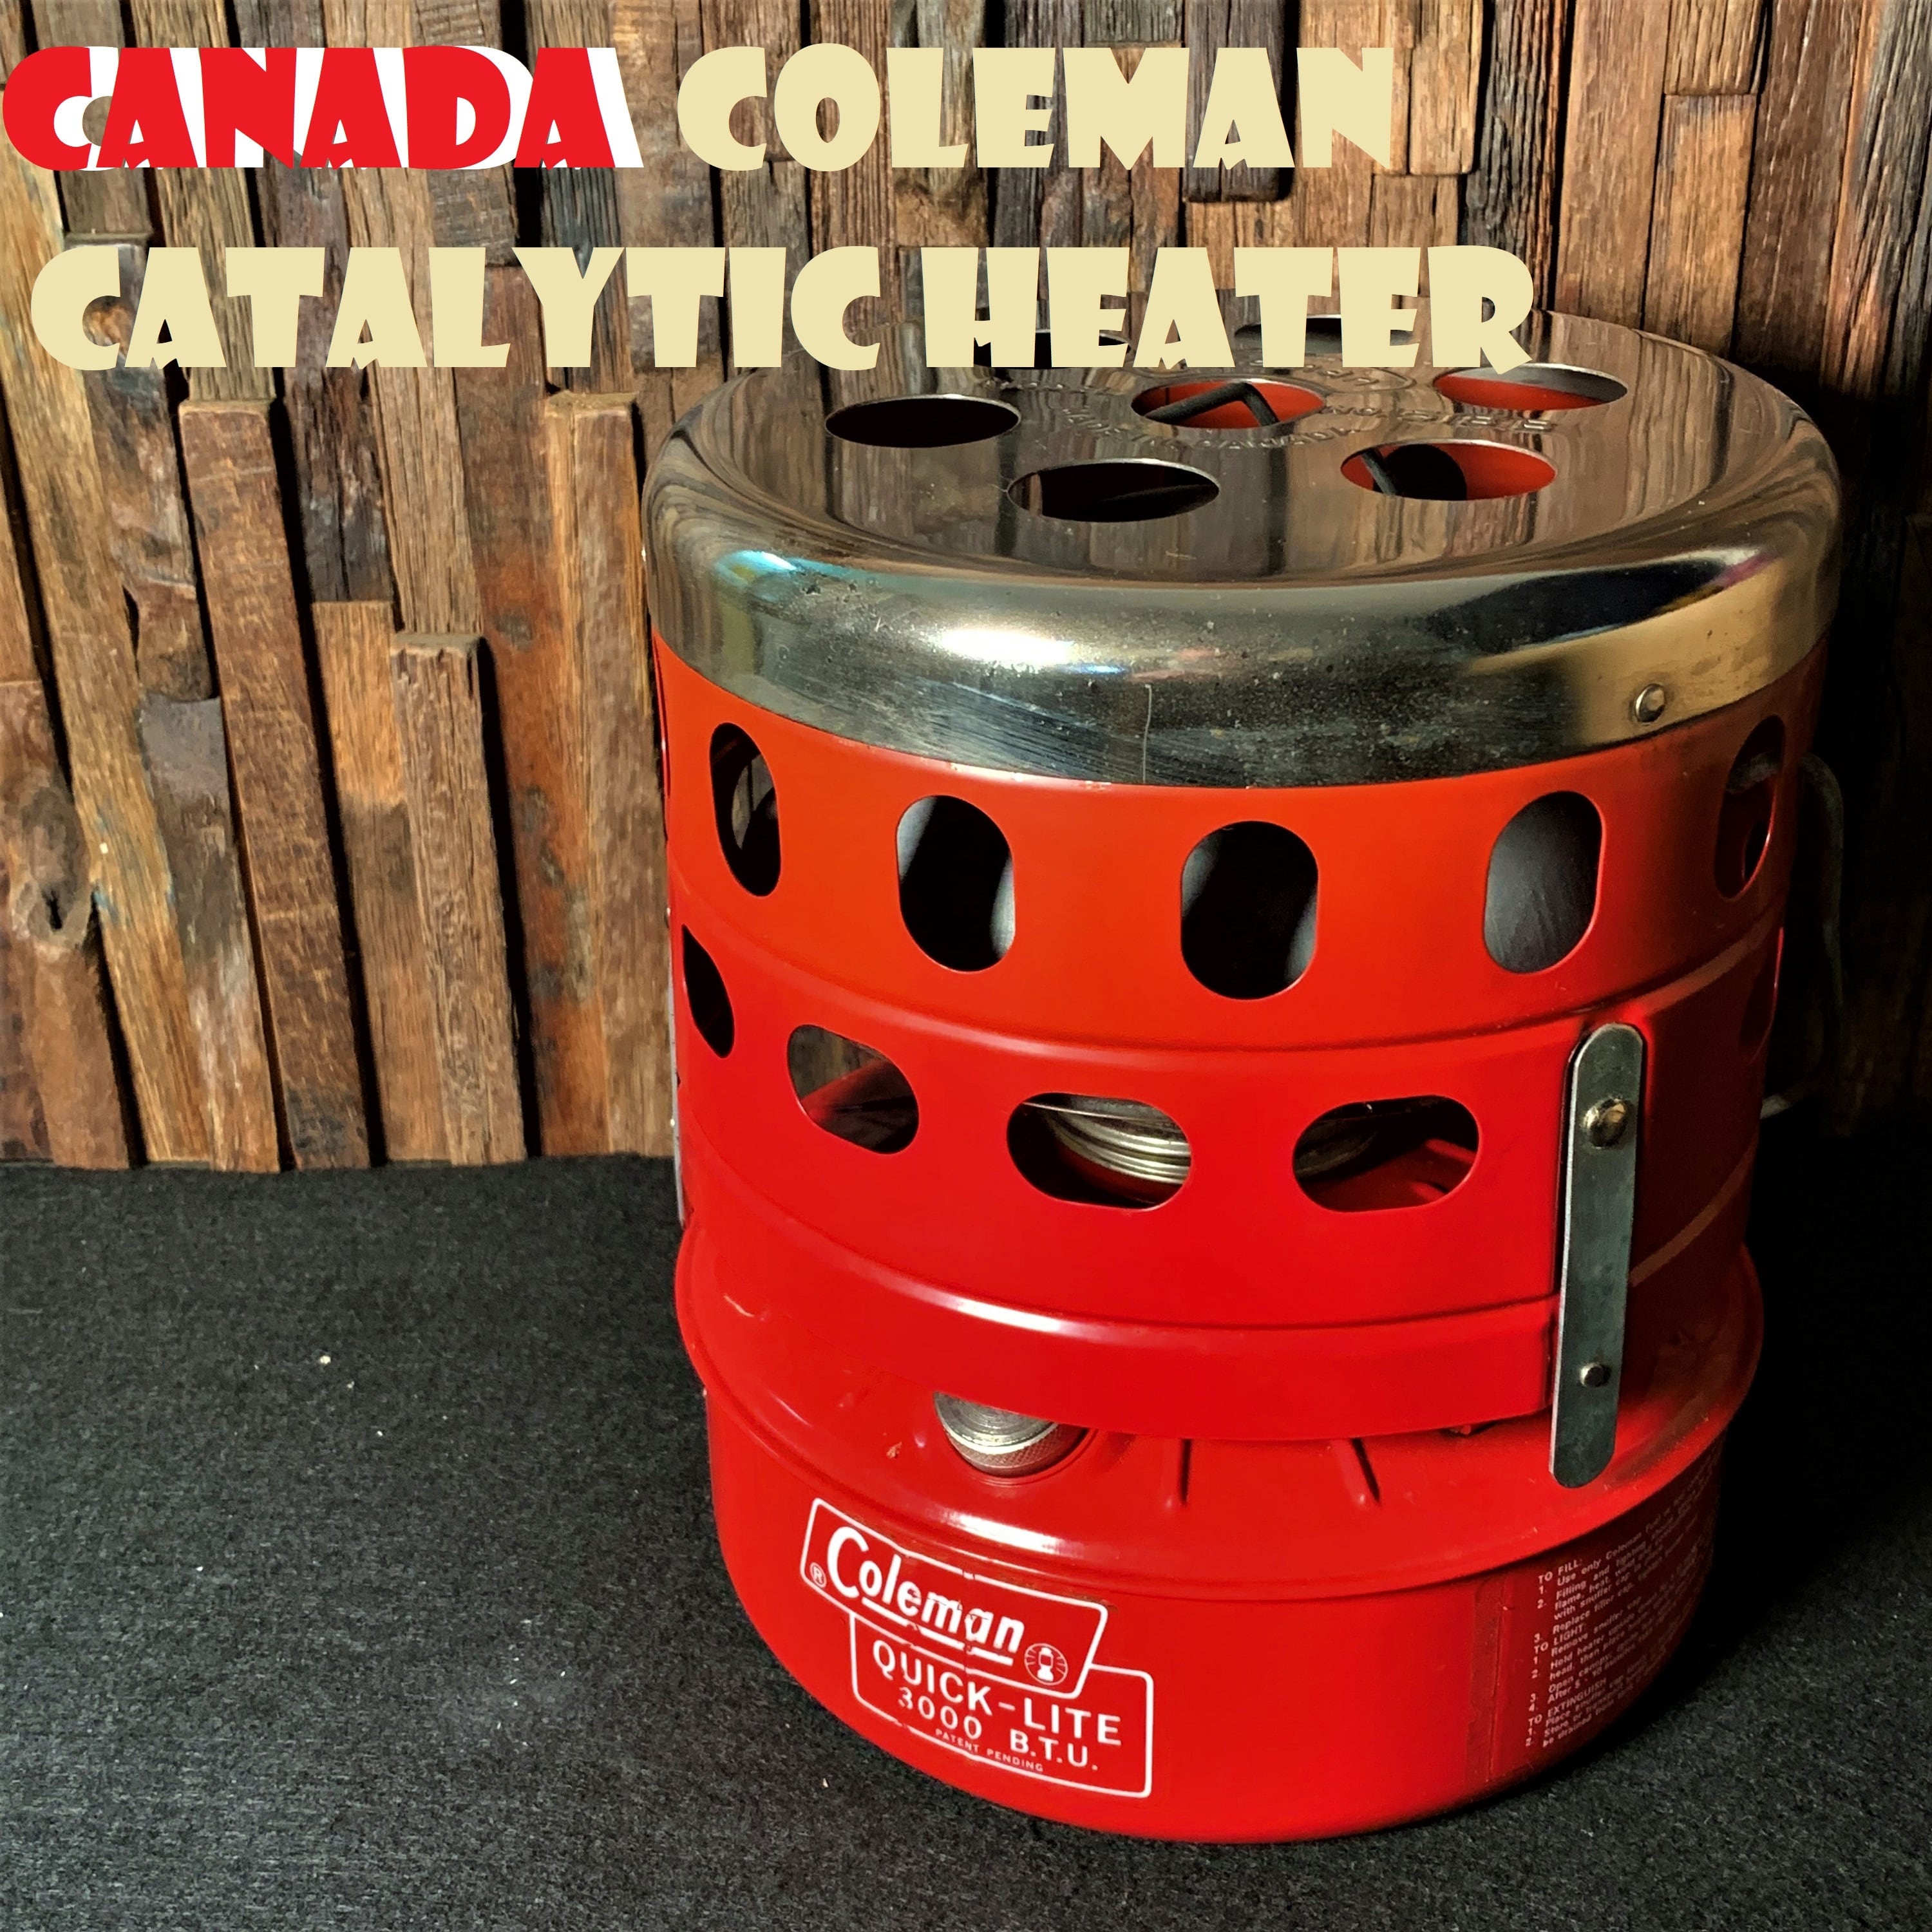 カナダ コールマン キャタリティックヒーター 518B コンパクト 赤